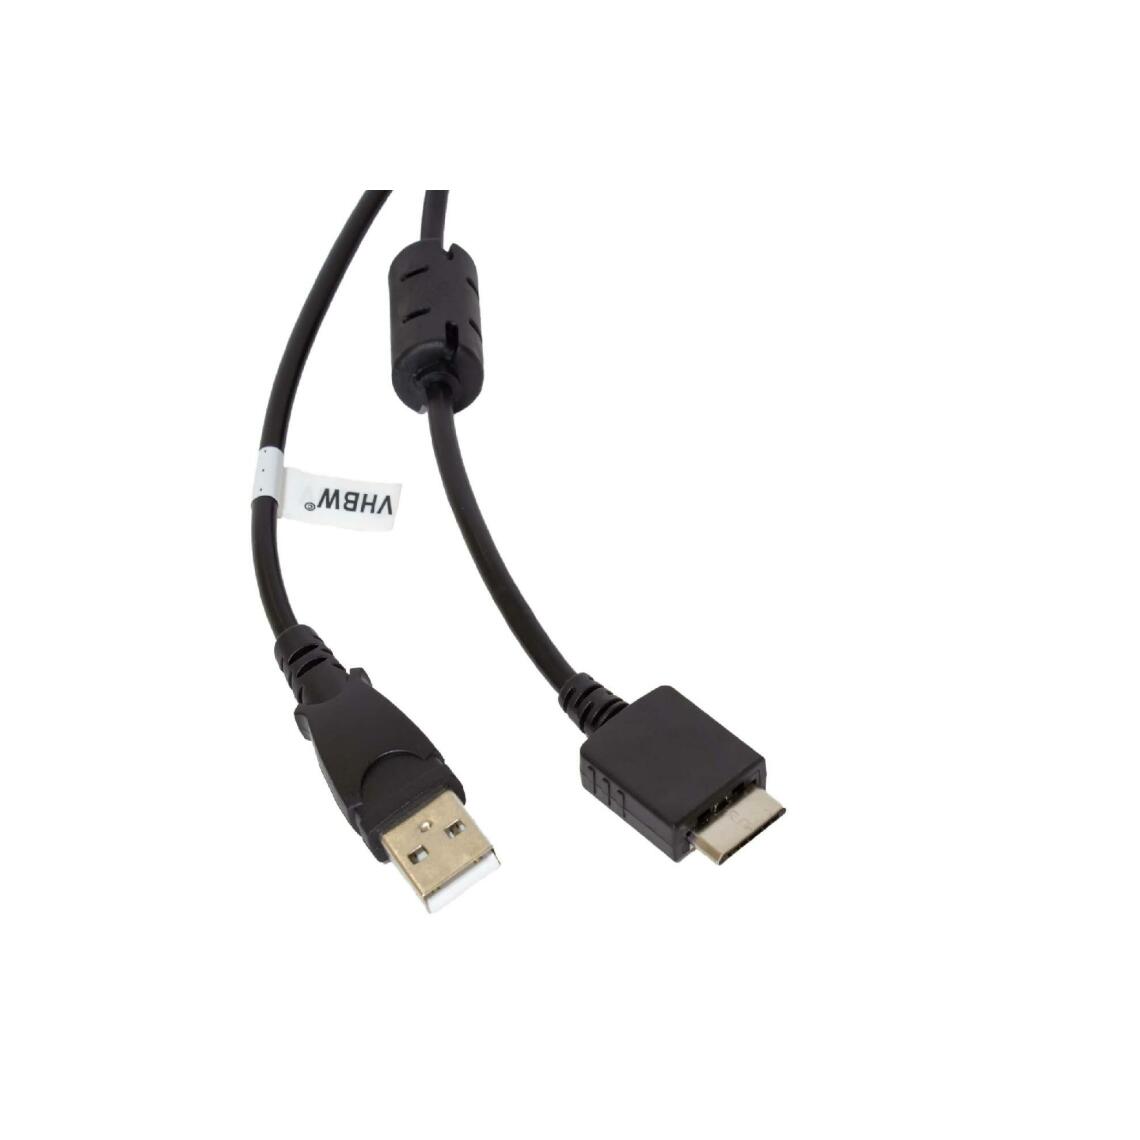 Vhbw - vhbw câble de données USB (type A sur lecteur MP3) câble de chargement compatible avec Sony Walkman NWZ-S638F lecteur MP3 - noir, 150cm - Alimentation modulaire